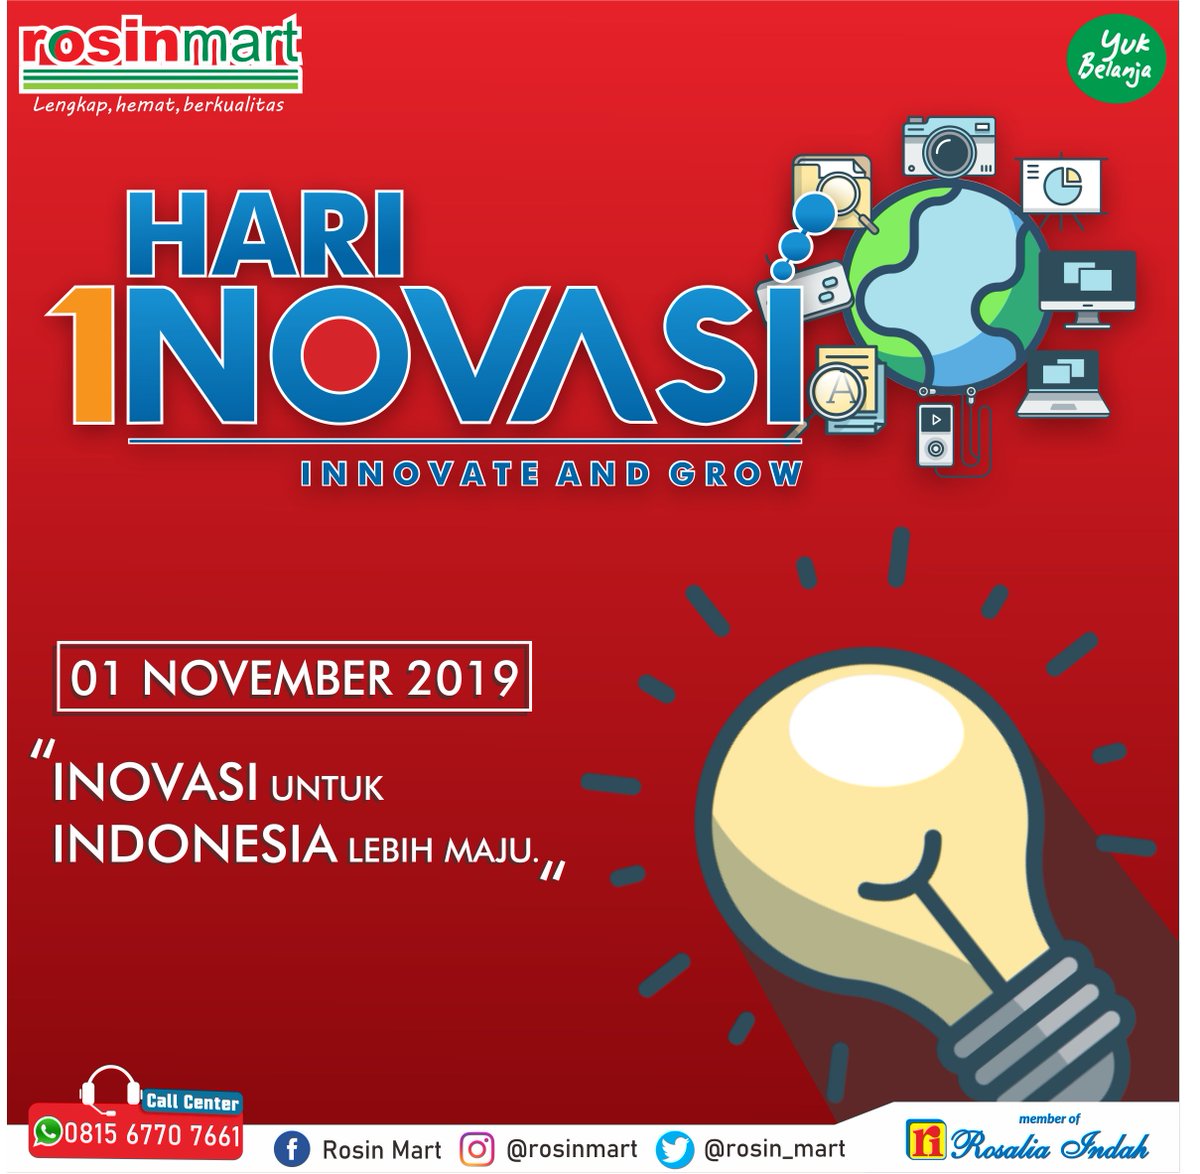 Selamat Hari Inovasi!
.
#hariinovasi #inovasi #ayoberinovasi  #beyondinnovation #innovation #Indonesia  #rosinmart #rosaliaindah